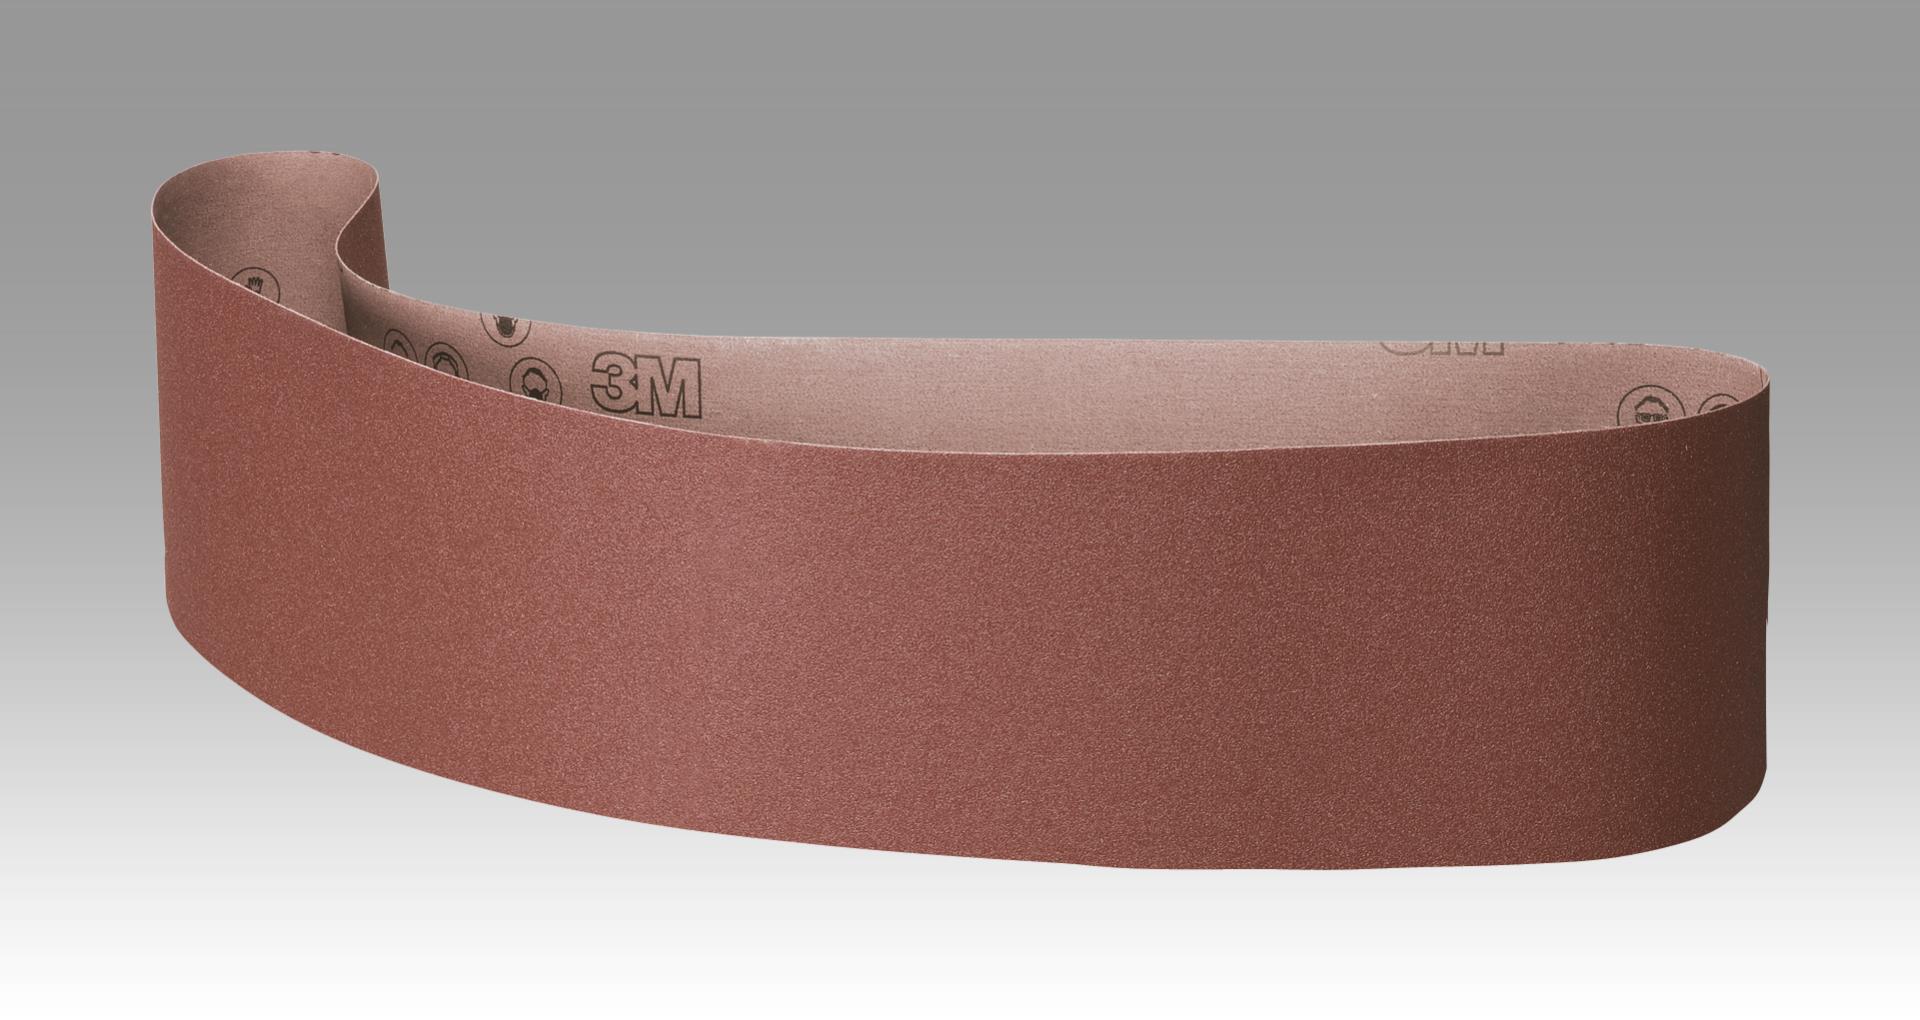 10x Klingspor Tissue Grinding Belt Sander Bands Thick SM-100 Grit all 